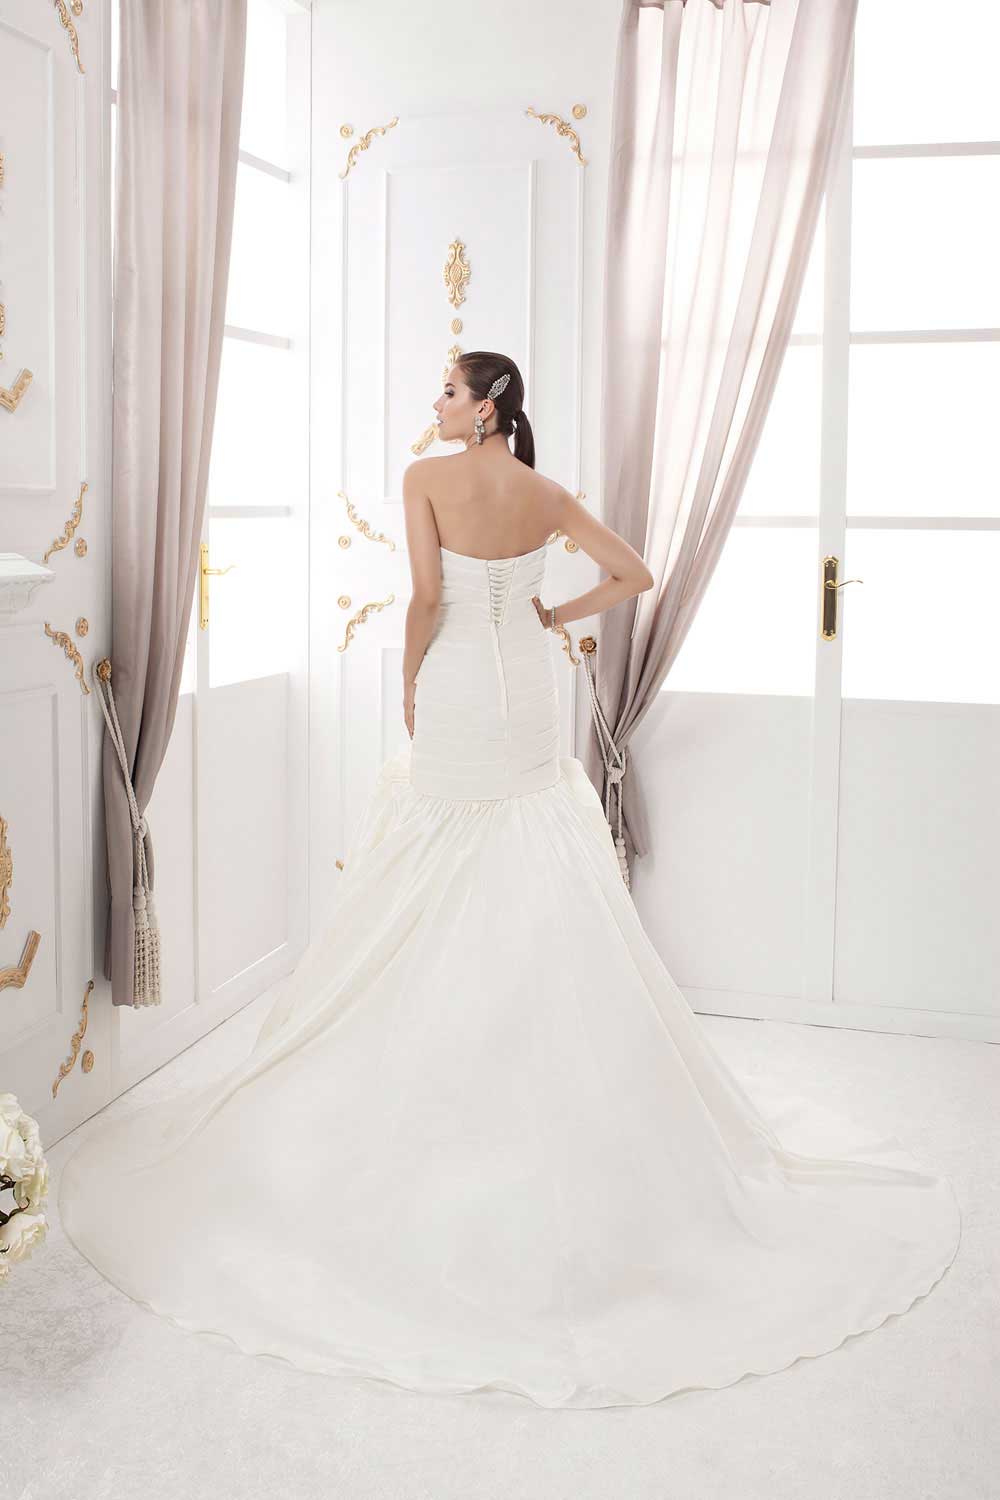 wedding dresses in Lebanon, weddings in Lebanon, wedding gowns in Lebanon, Lebanon wedding dresses, Lebanese brides